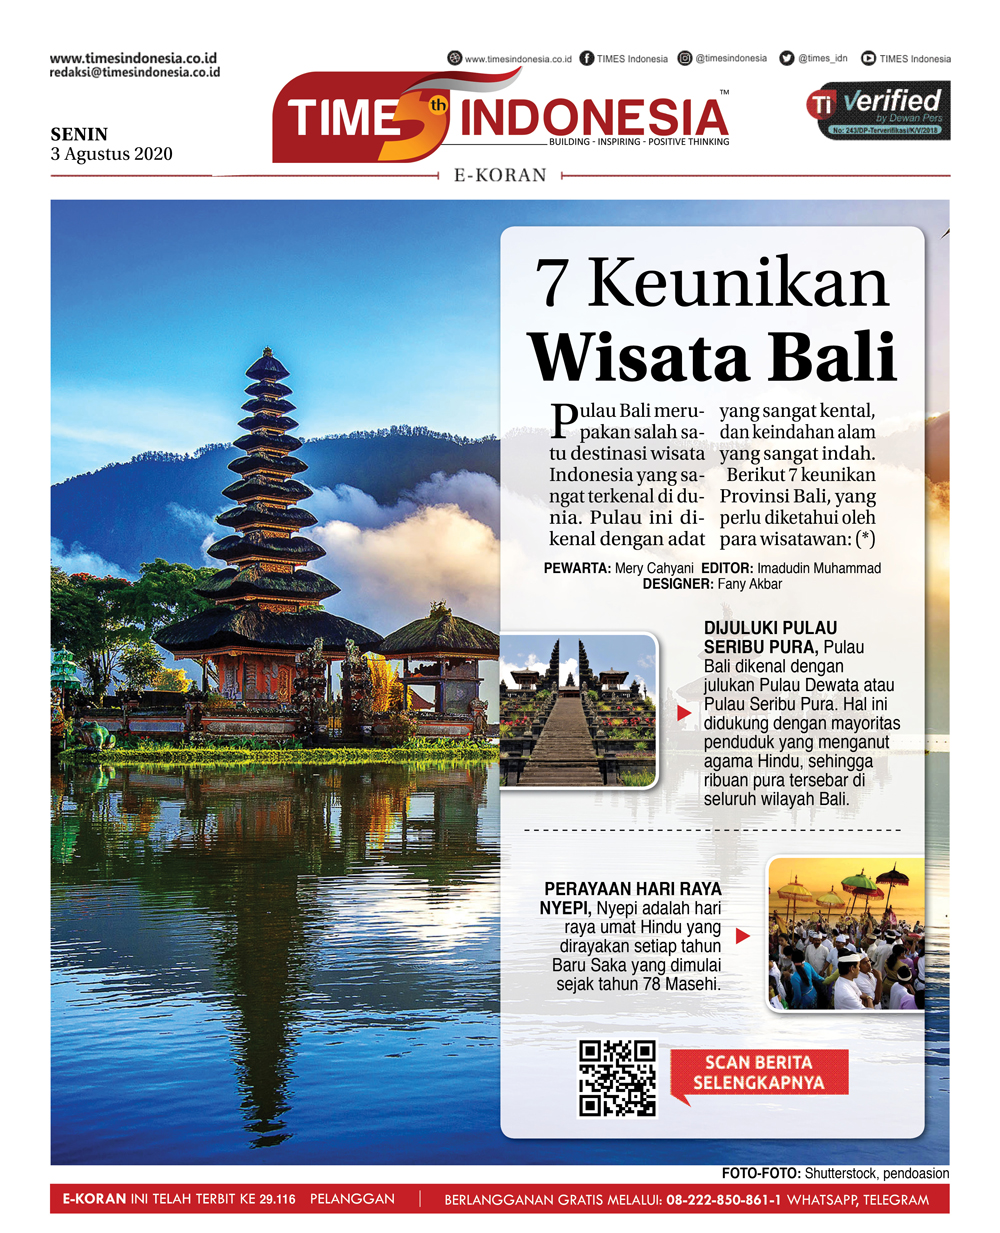 PDF-Edisi-Senin-3-Agustus-2020-Wisata-Bali.jpg